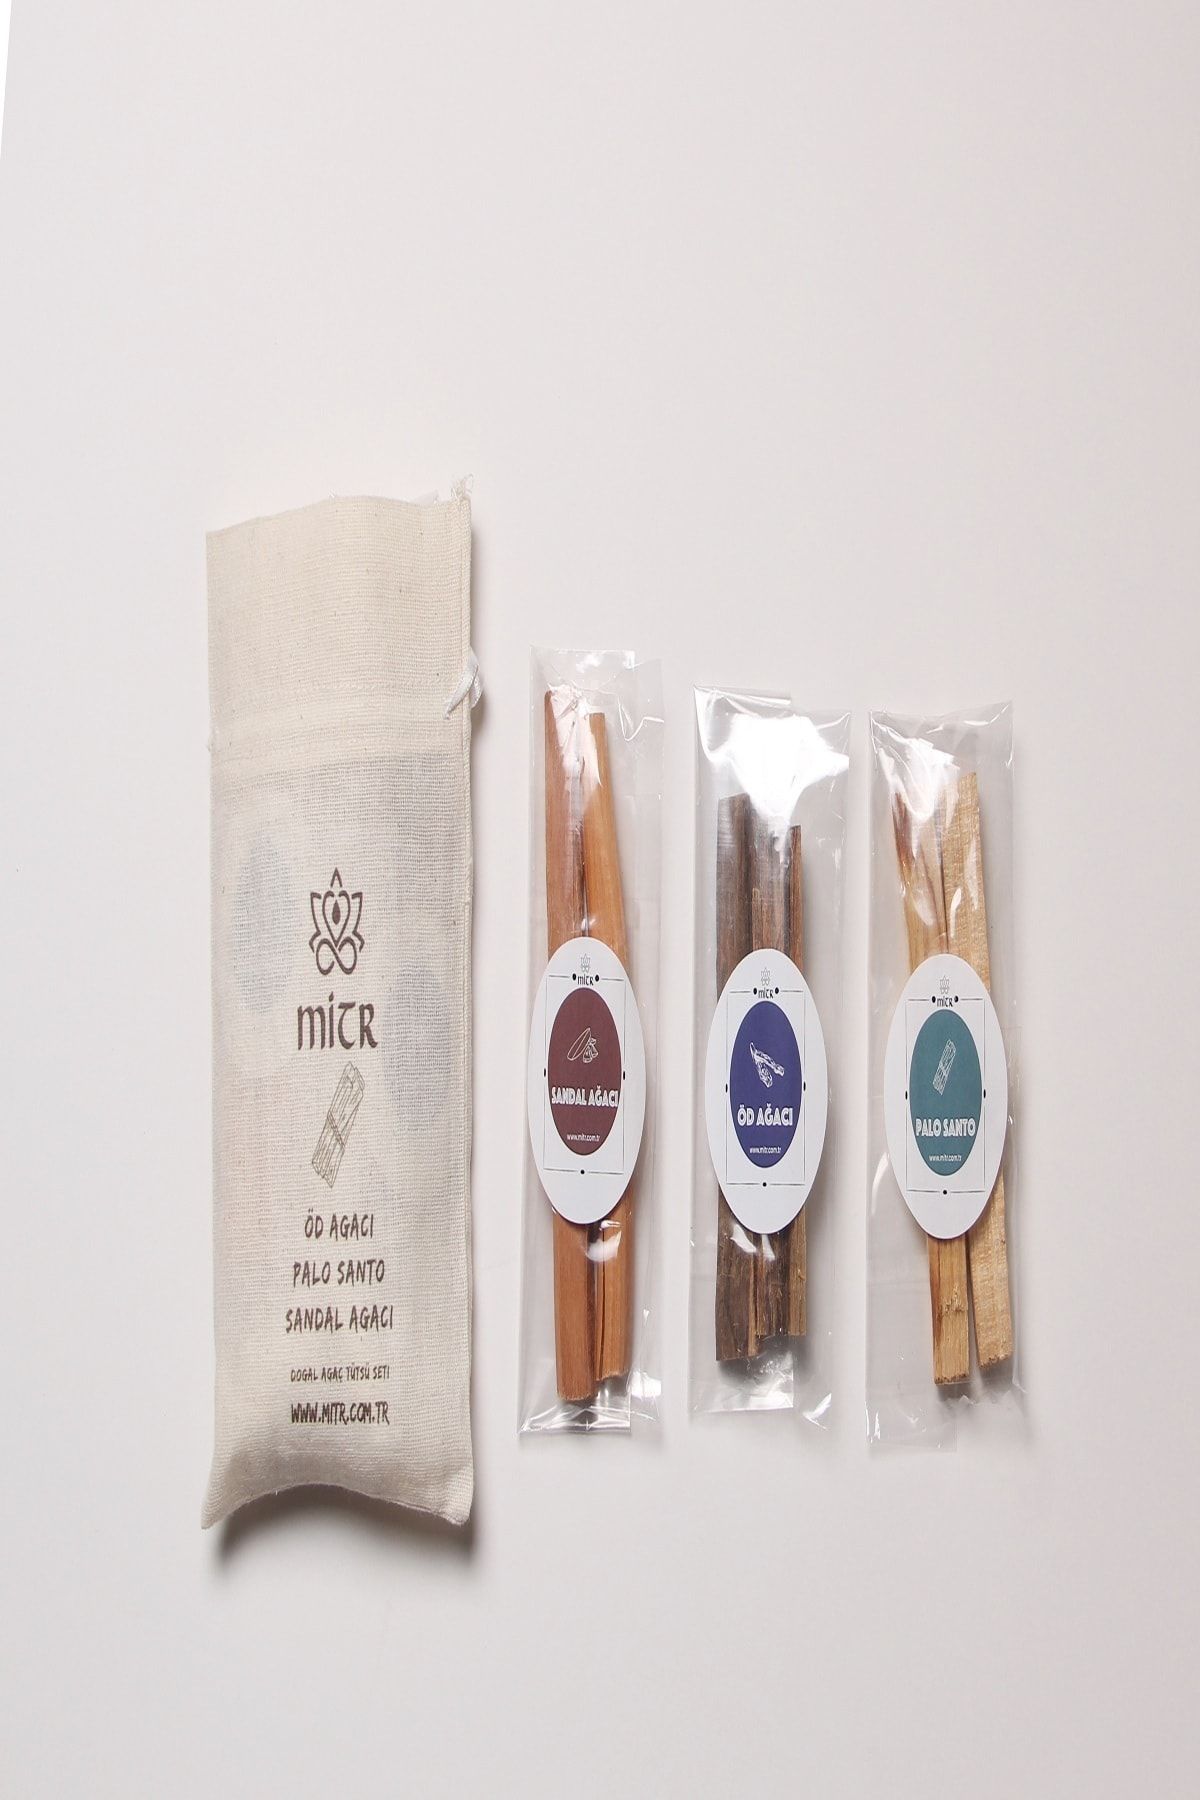 Mitr Sandal – Palo Santo Ve Öd Ağacı Tütsü Paketi 60 Gr